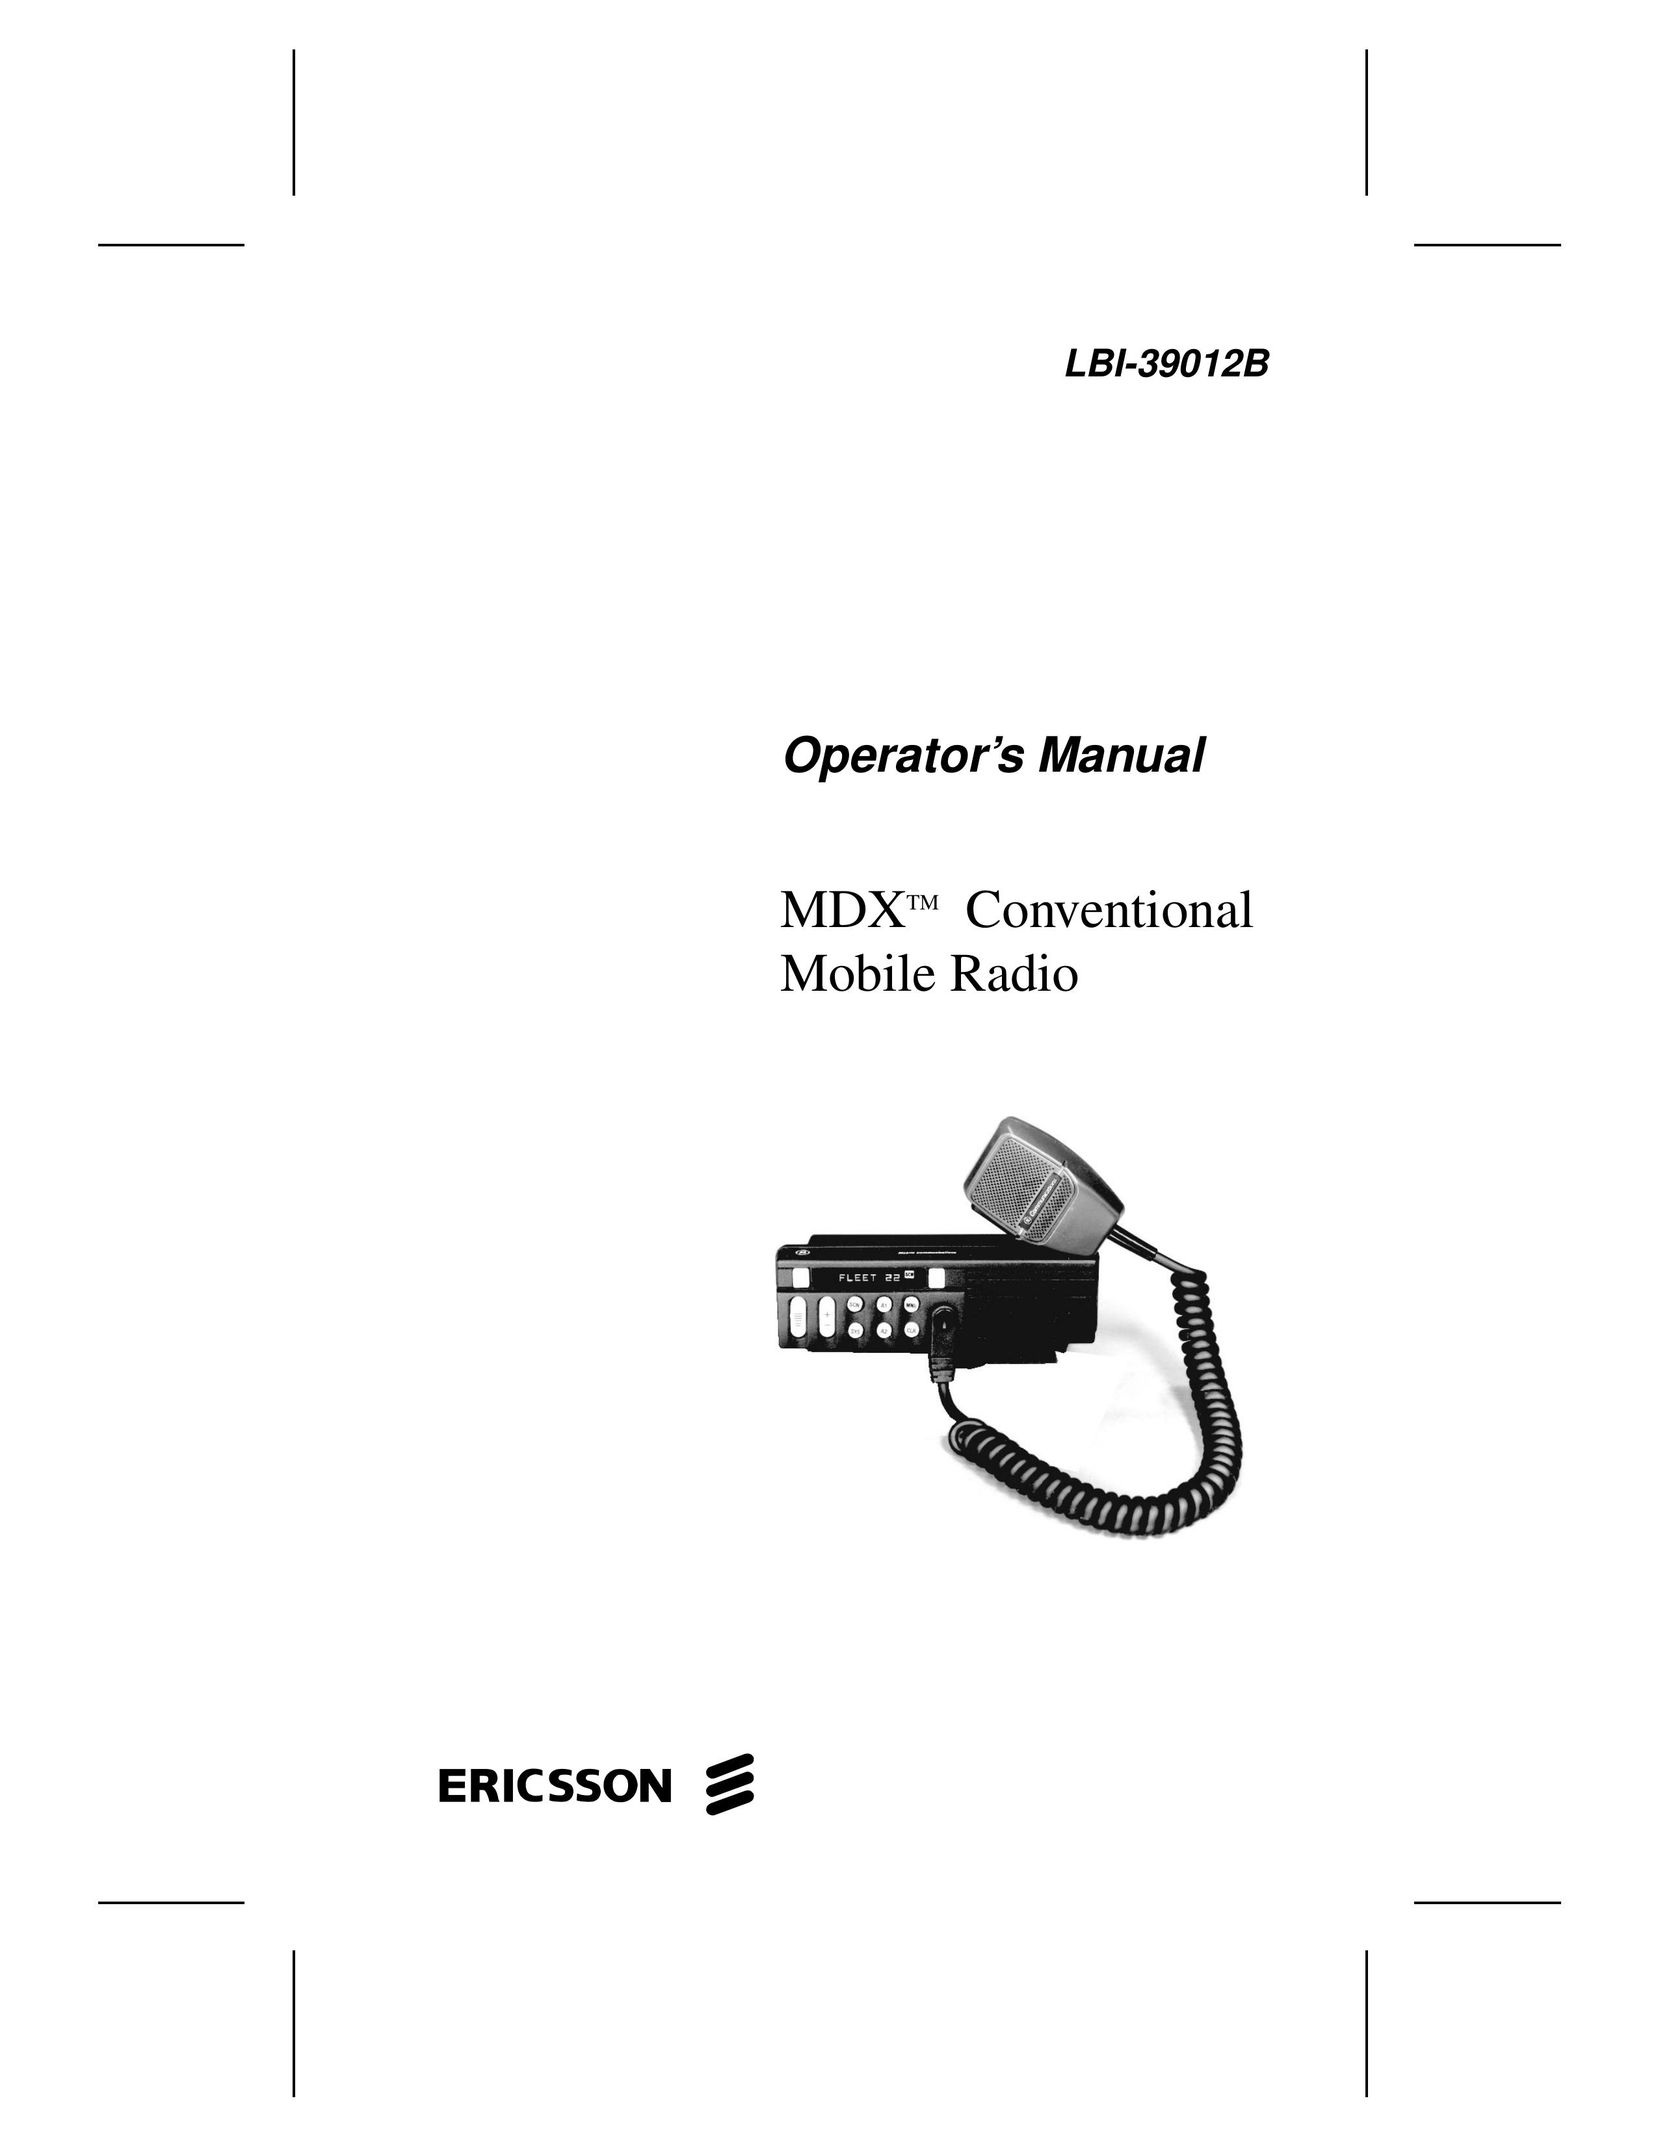 Ericsson LBI-39012B Two-Way Radio User Manual